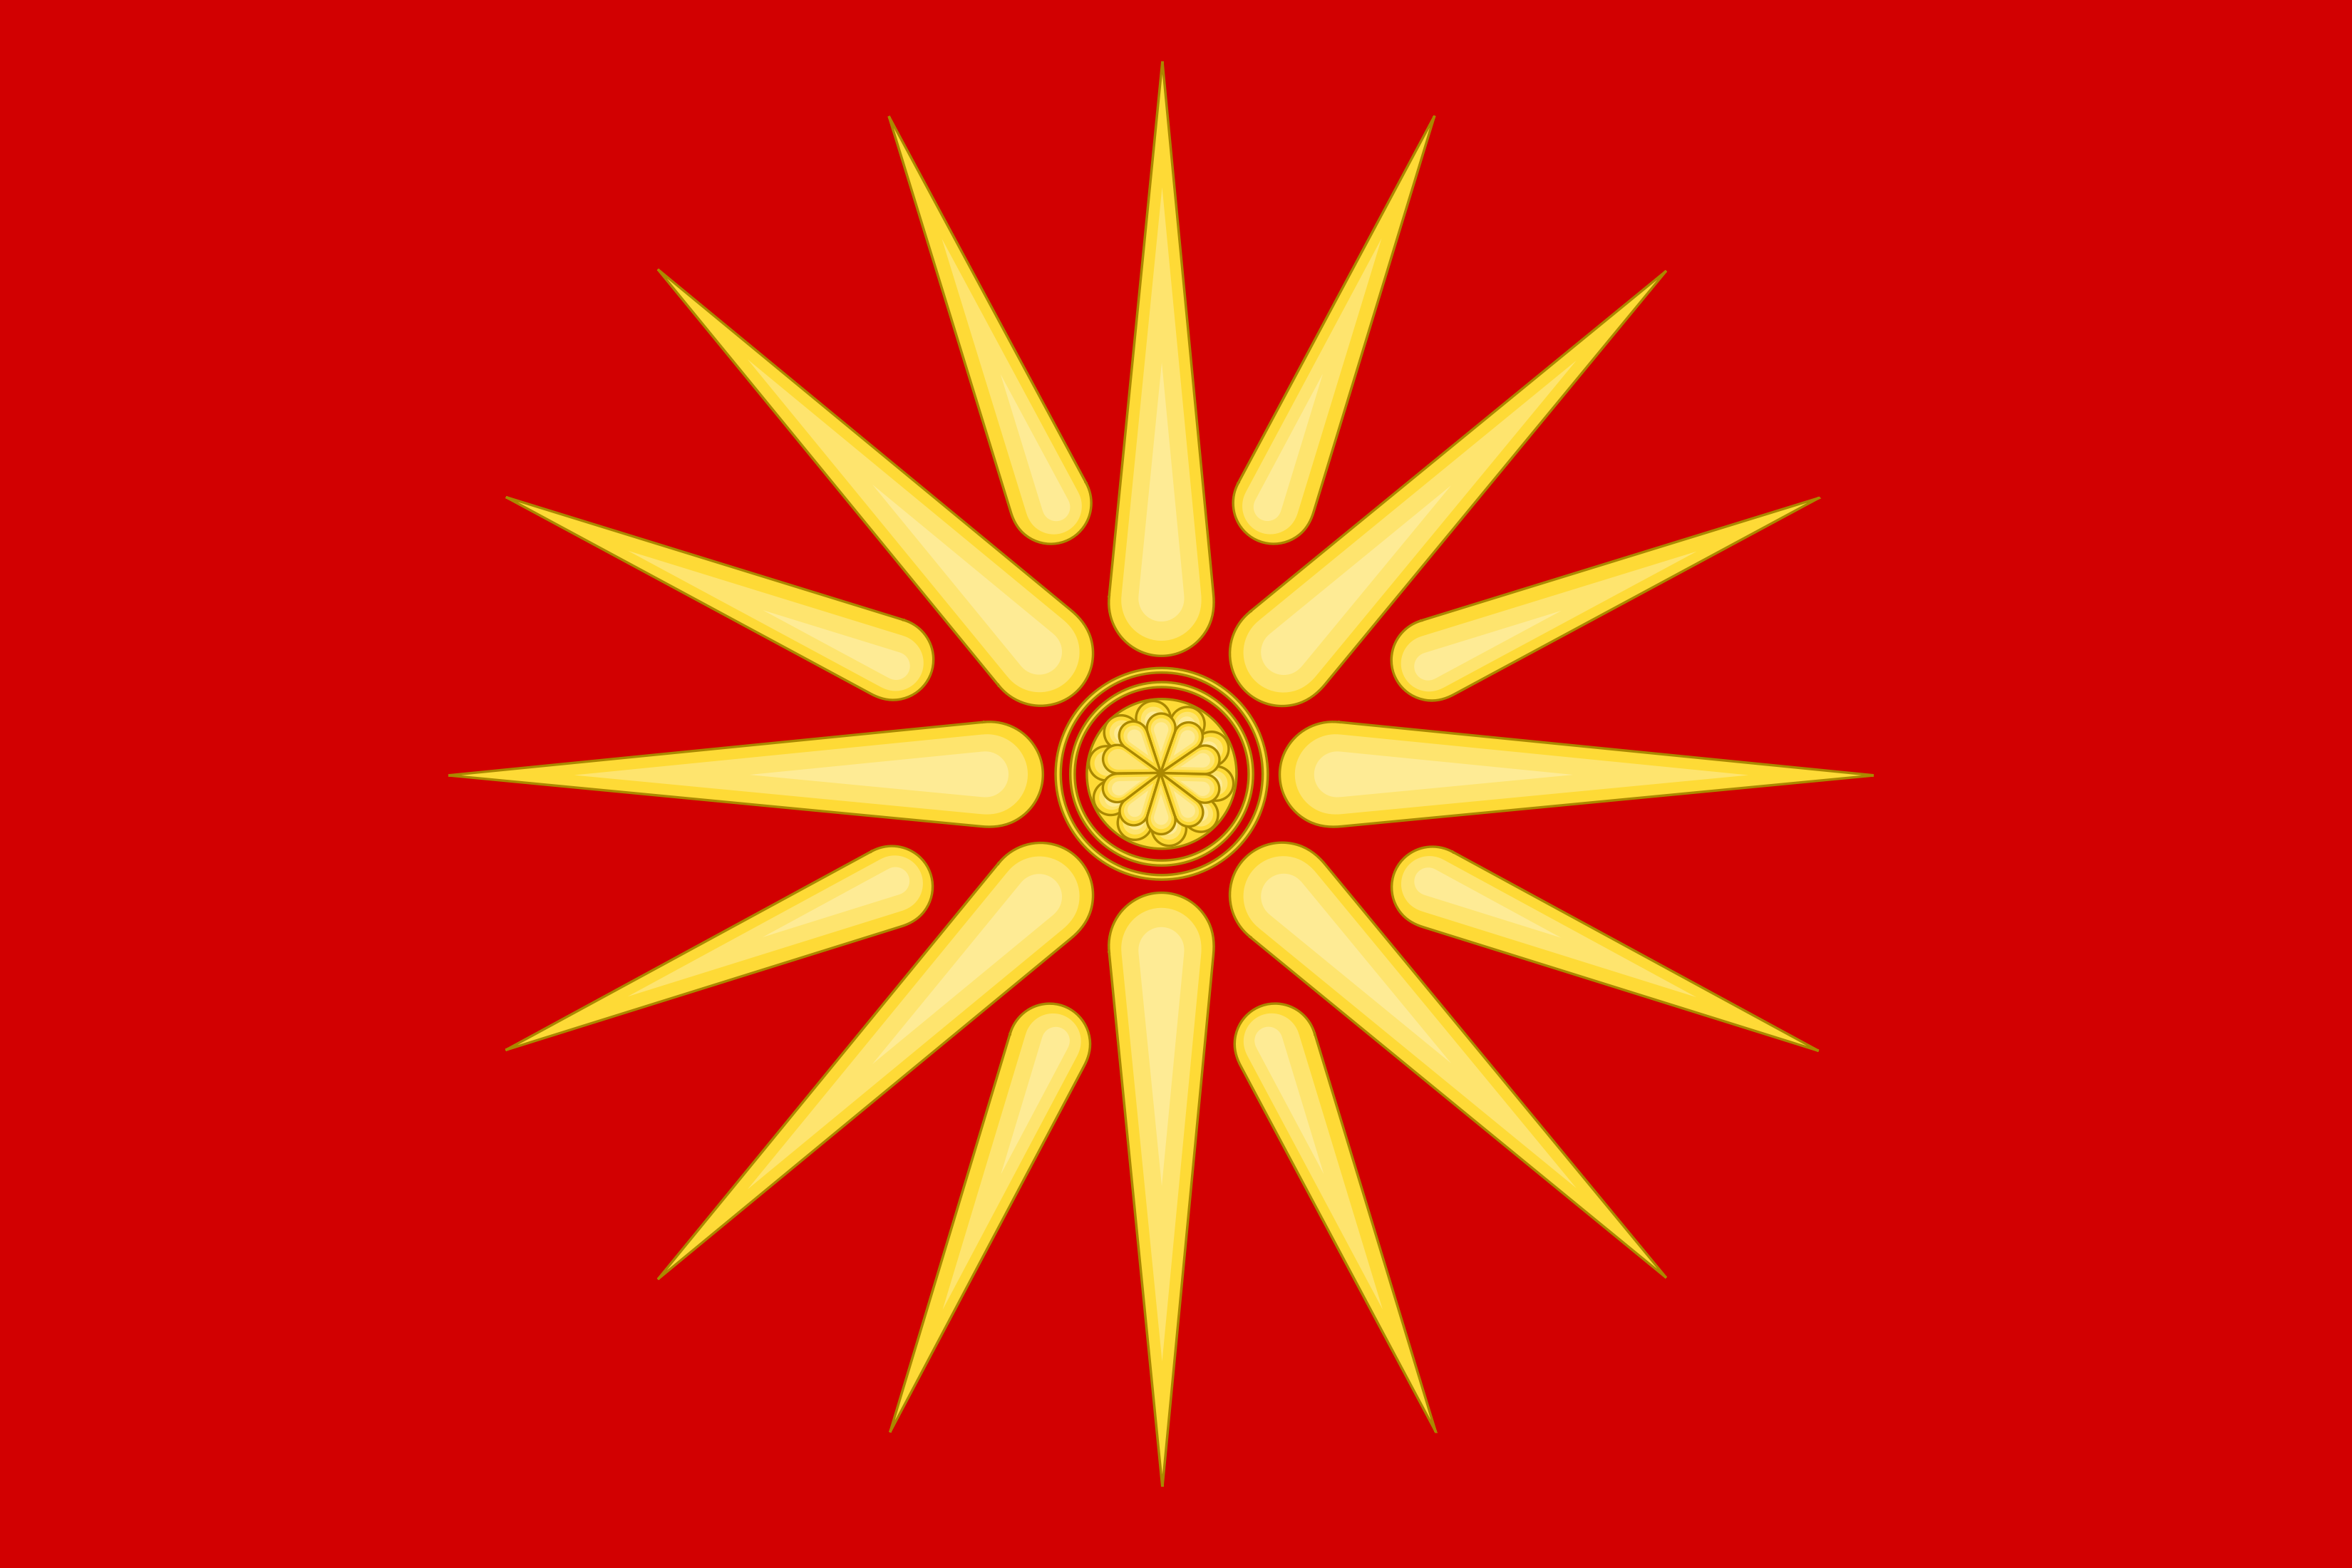 Macedon